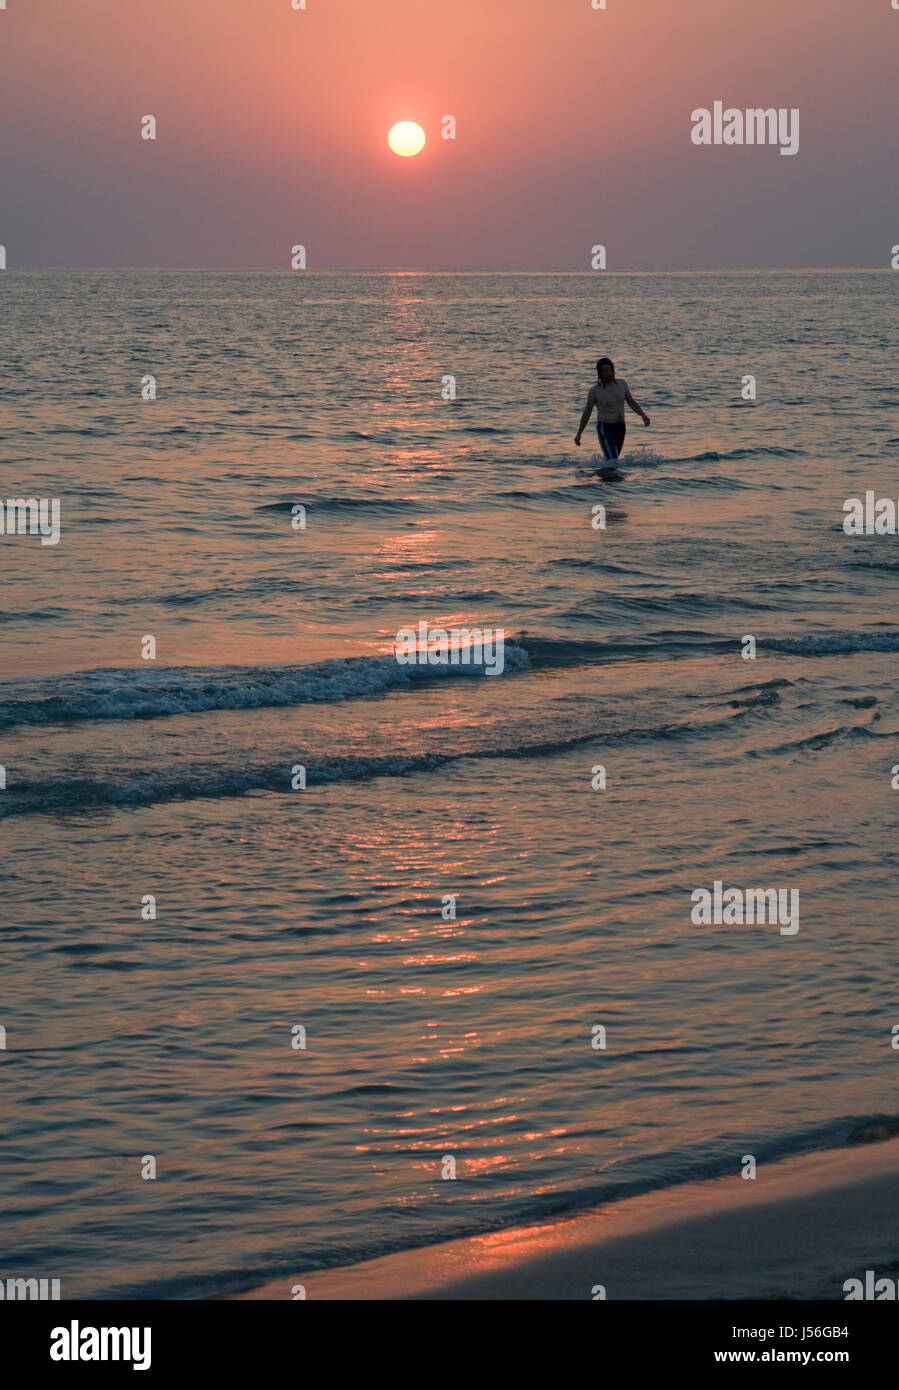 Figura solitaria al atardecer, la playa de Patara, Turquía. Foto de stock